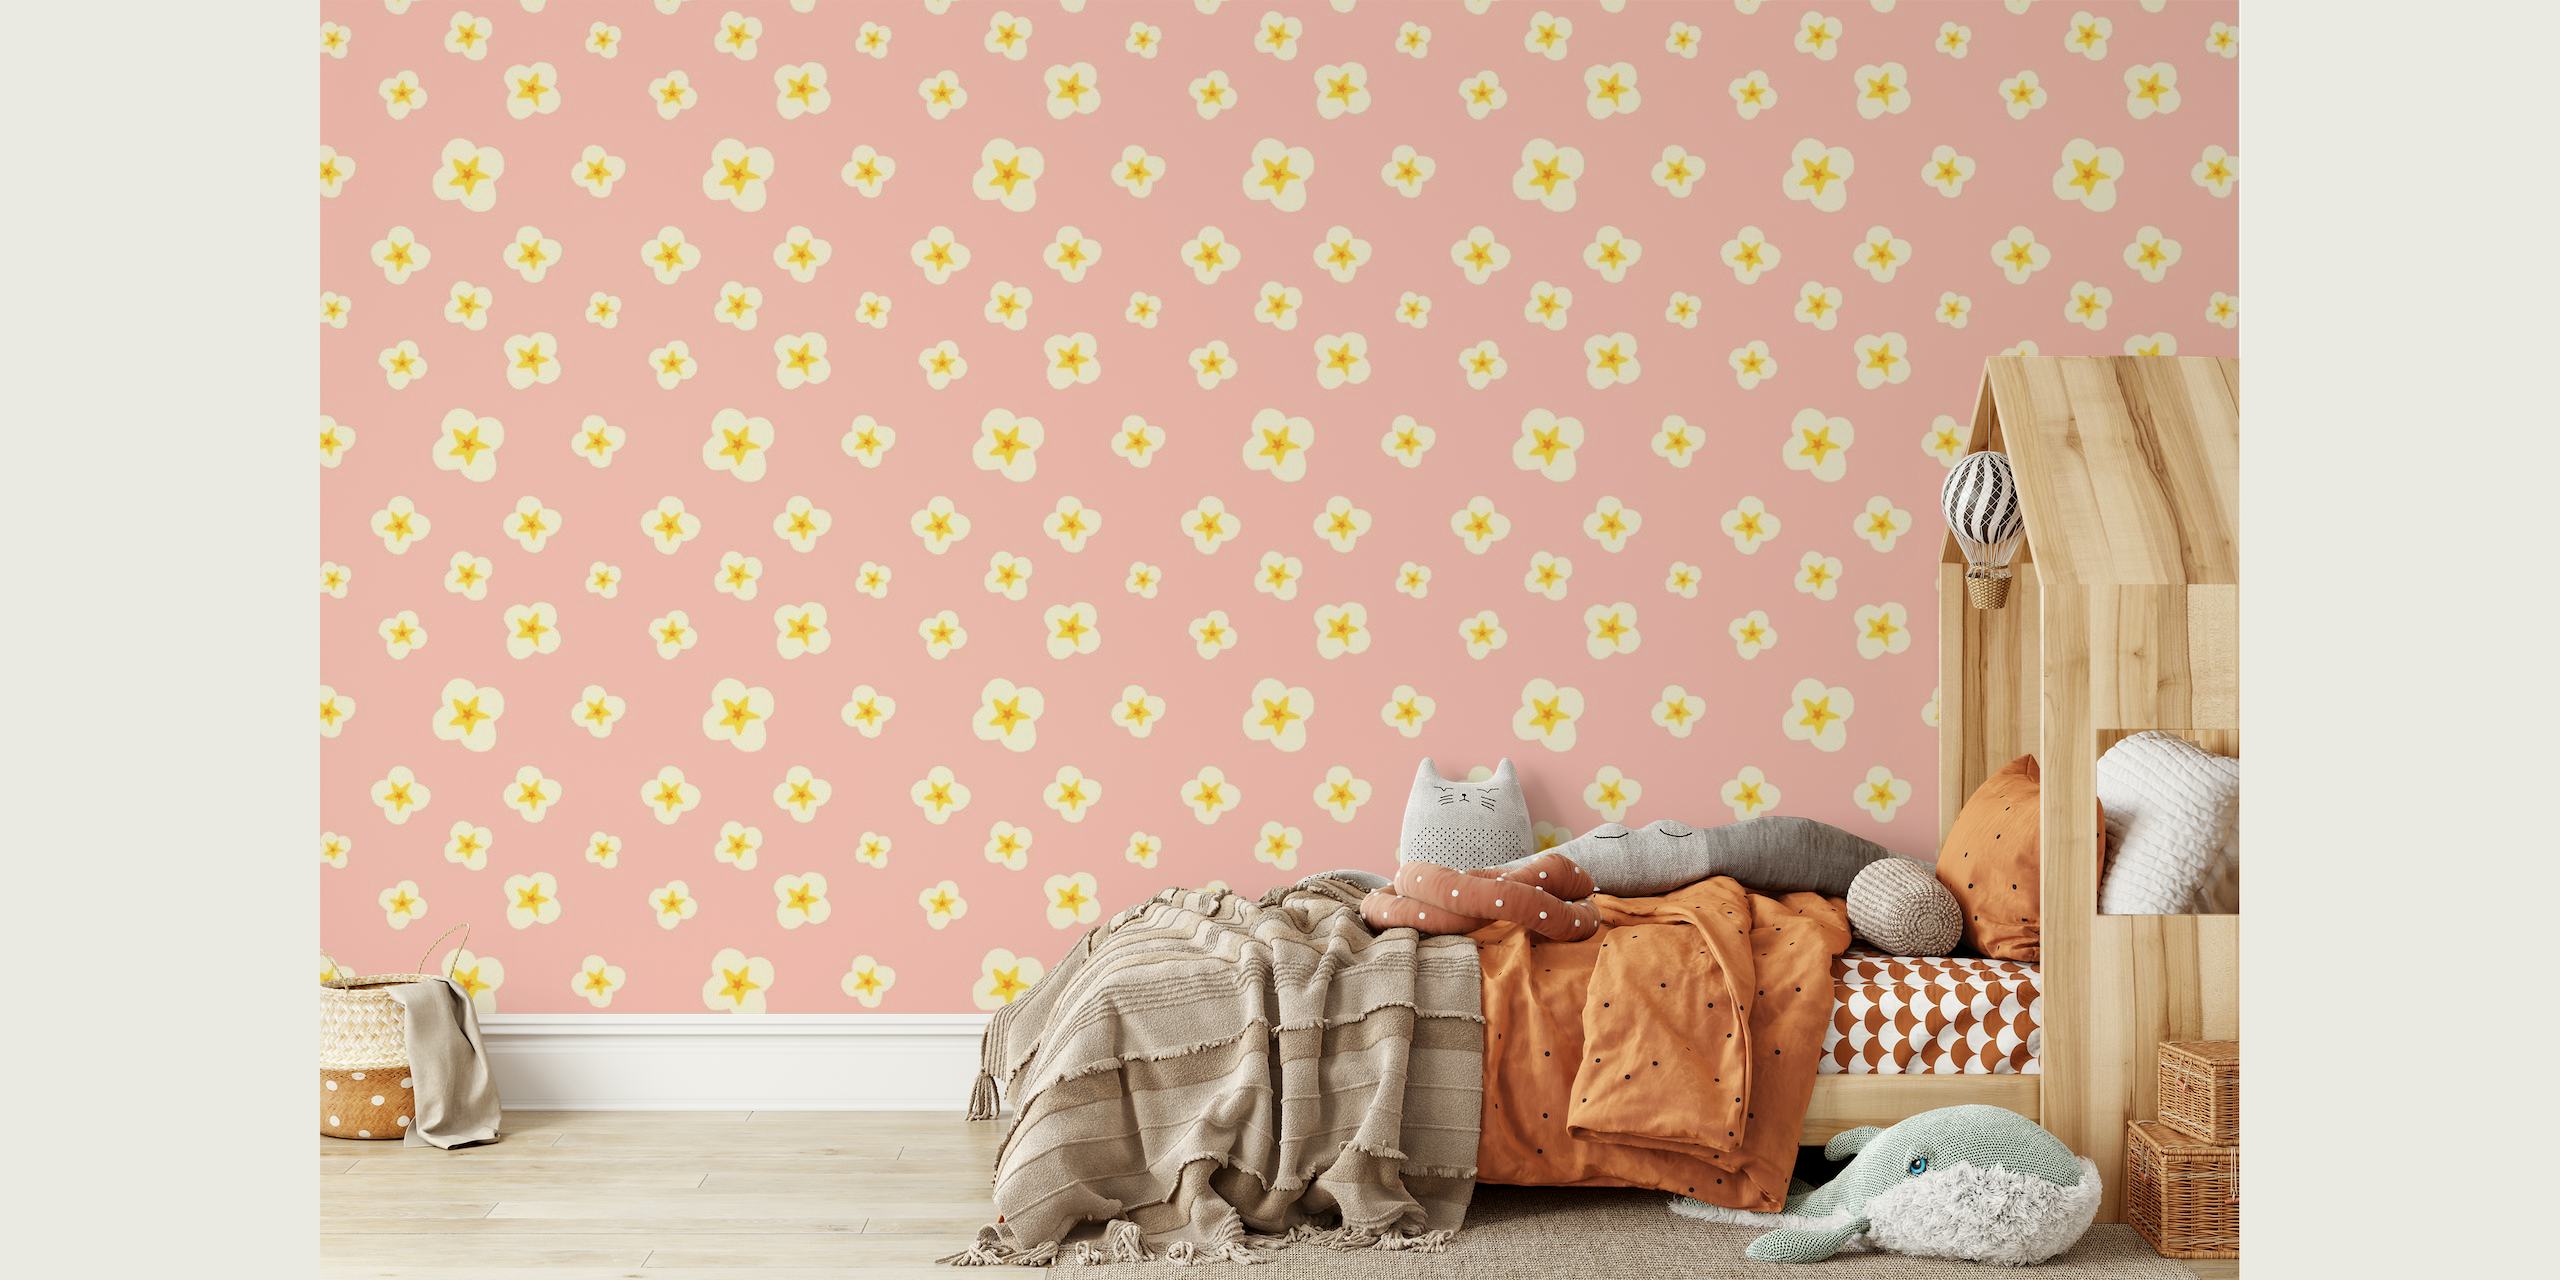 Pastelroze fotobehang met narcispatroon voor woondecoratie